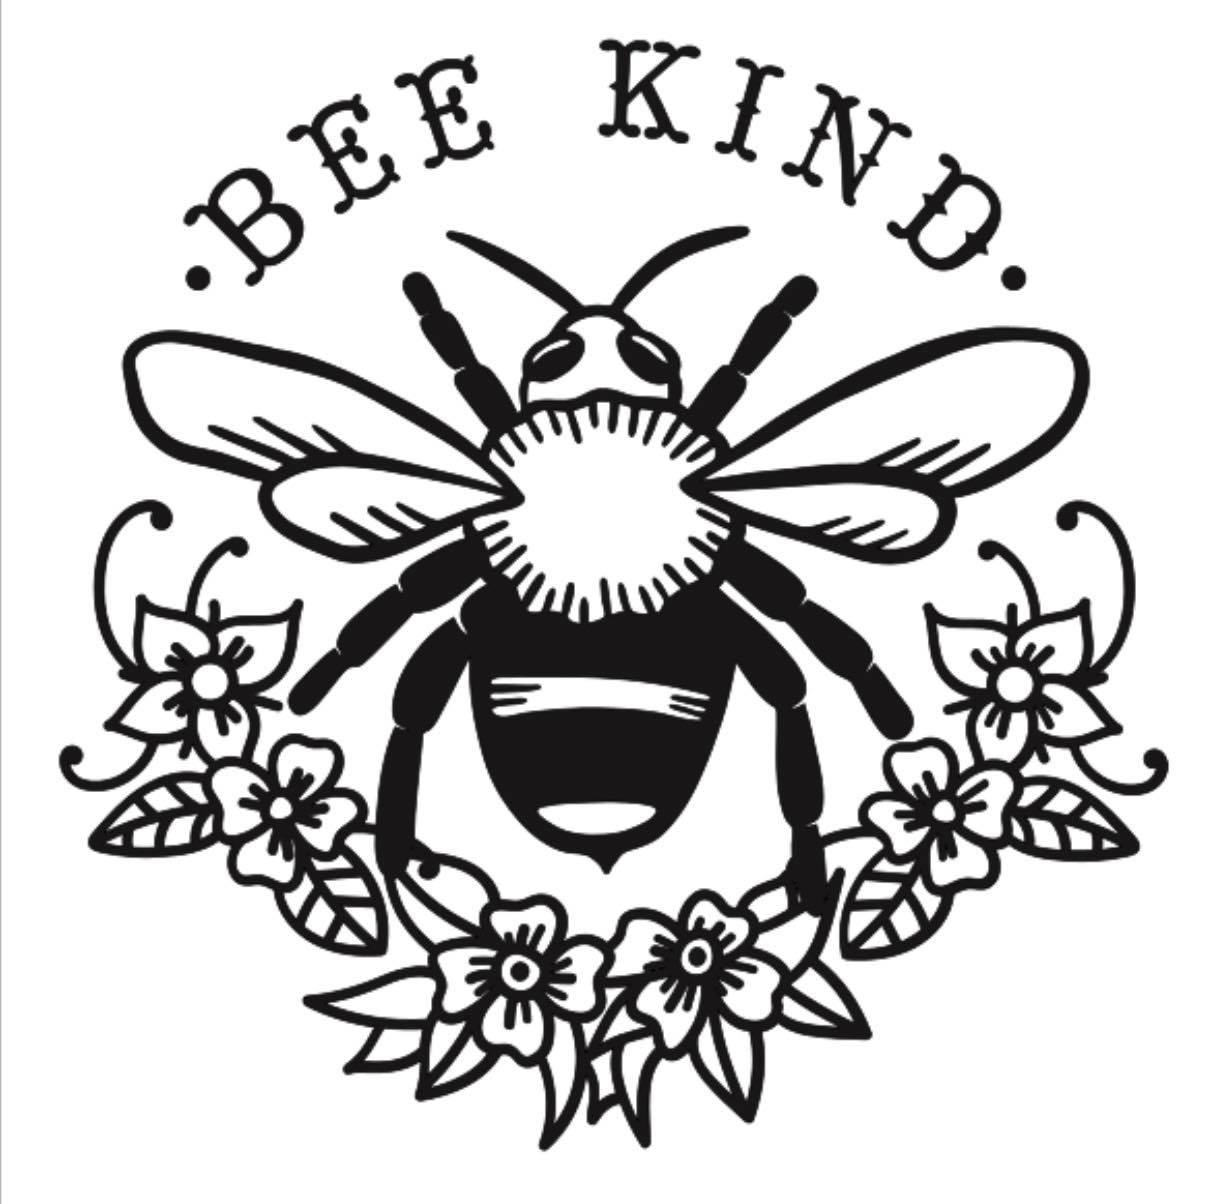 12x12 Bee Kind 